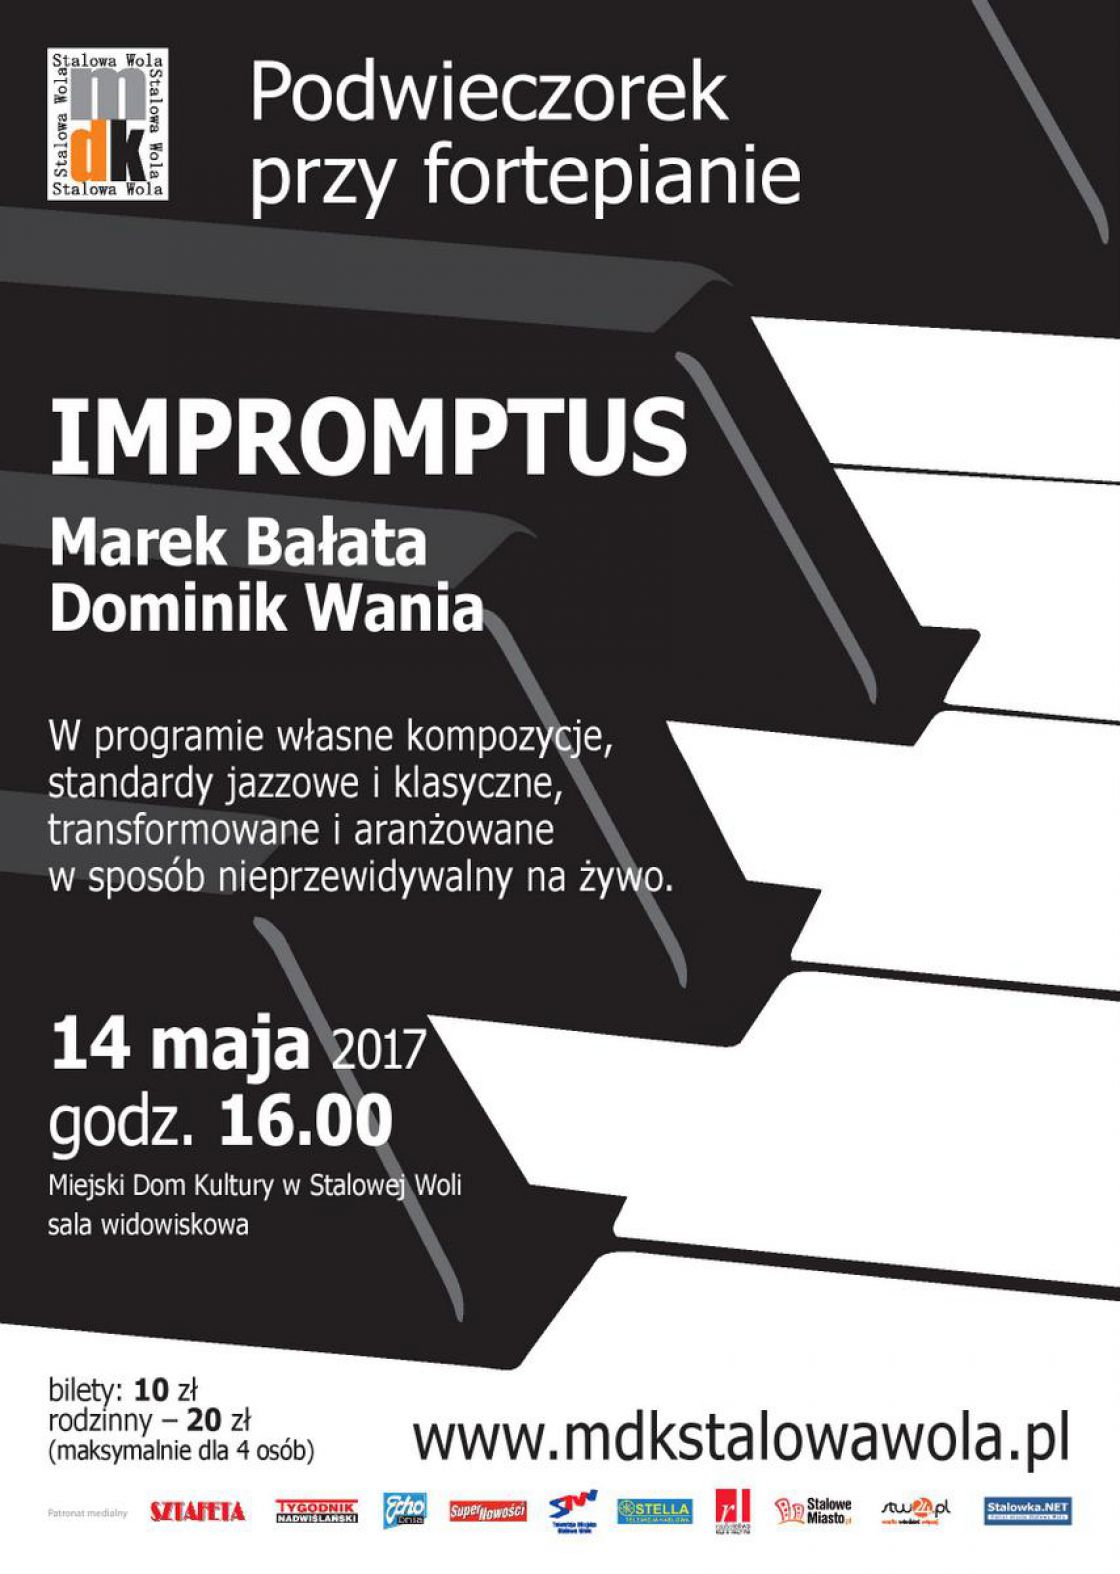 Podwieczorek przy fortepianie - IMPROMPTUS